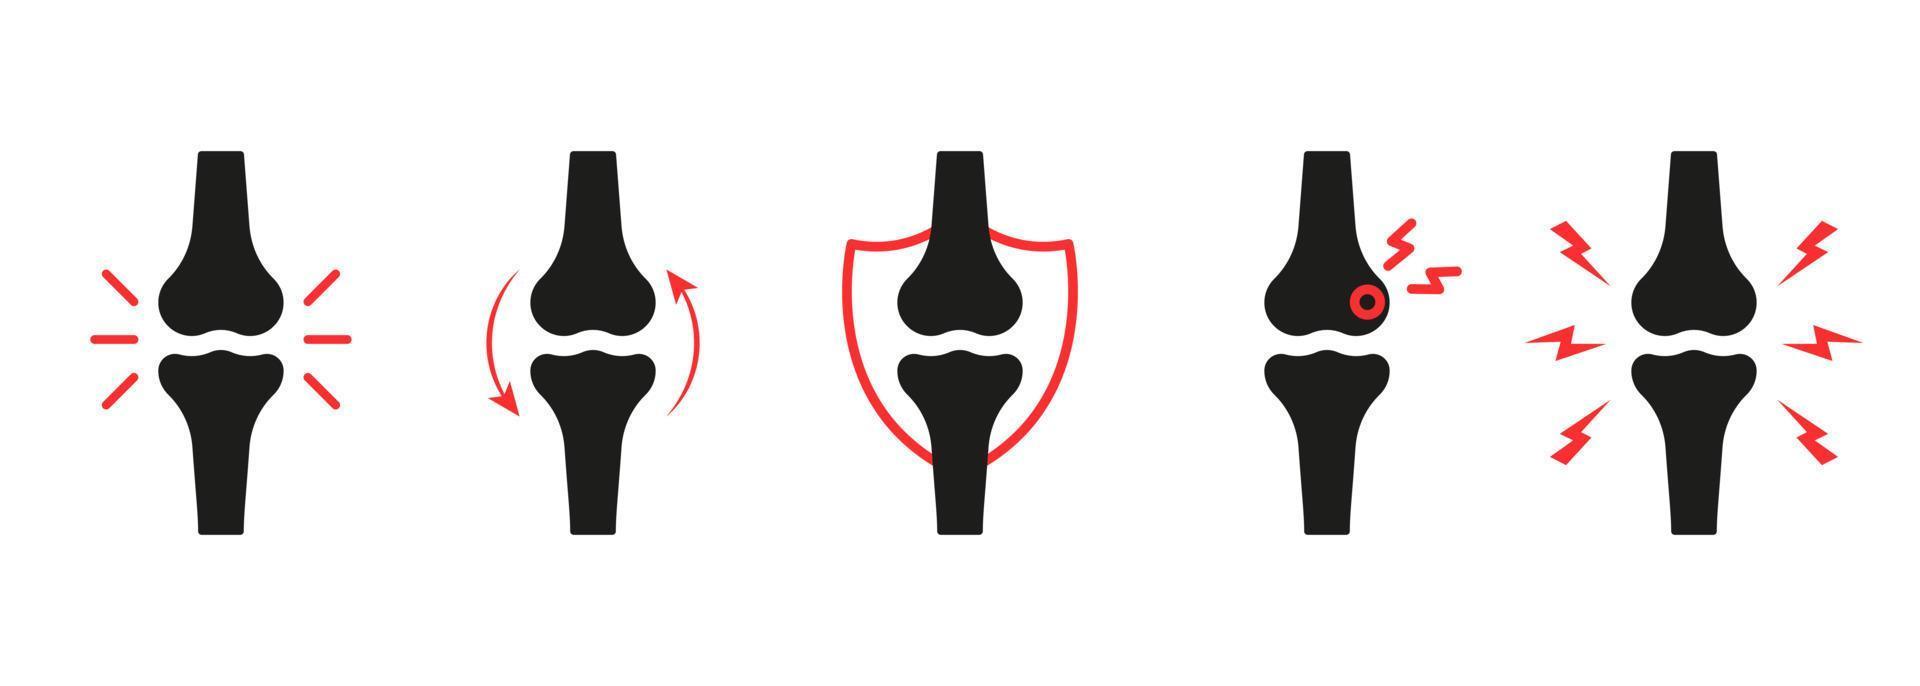 ensemble d'icônes de silhouette de douleur articulaire du genou. mal au genou, à la main, au squelette de la jambe. douleurs osseuses, blessures et inflammations. icône de l'arthrite, de l'ostéoporose et de la maladie articulaire des os. illustration vectorielle isolée. vecteur